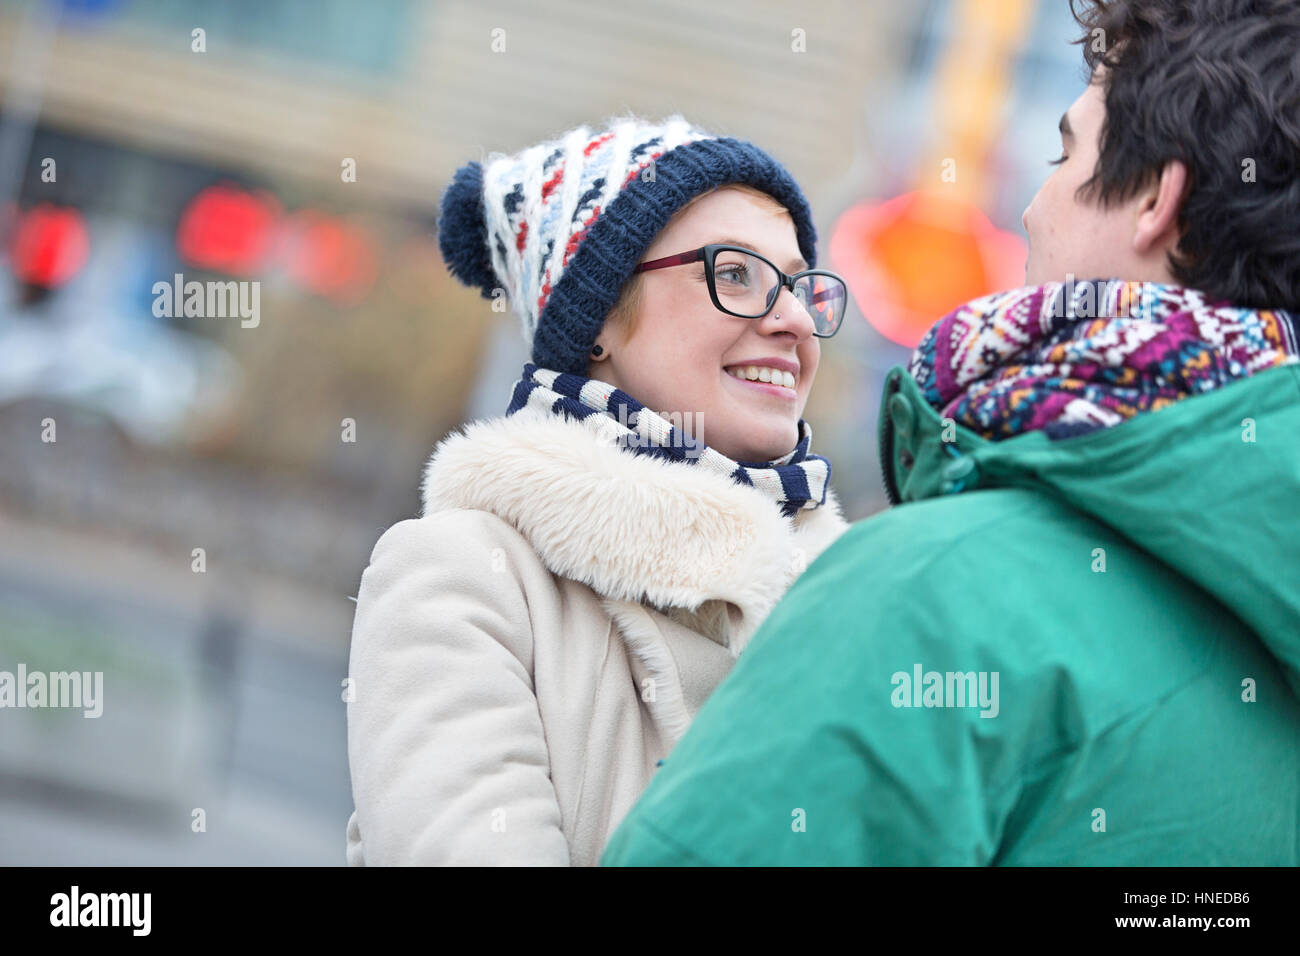 Coppia romantica guardando ogni altro in città durante il periodo invernale Foto Stock